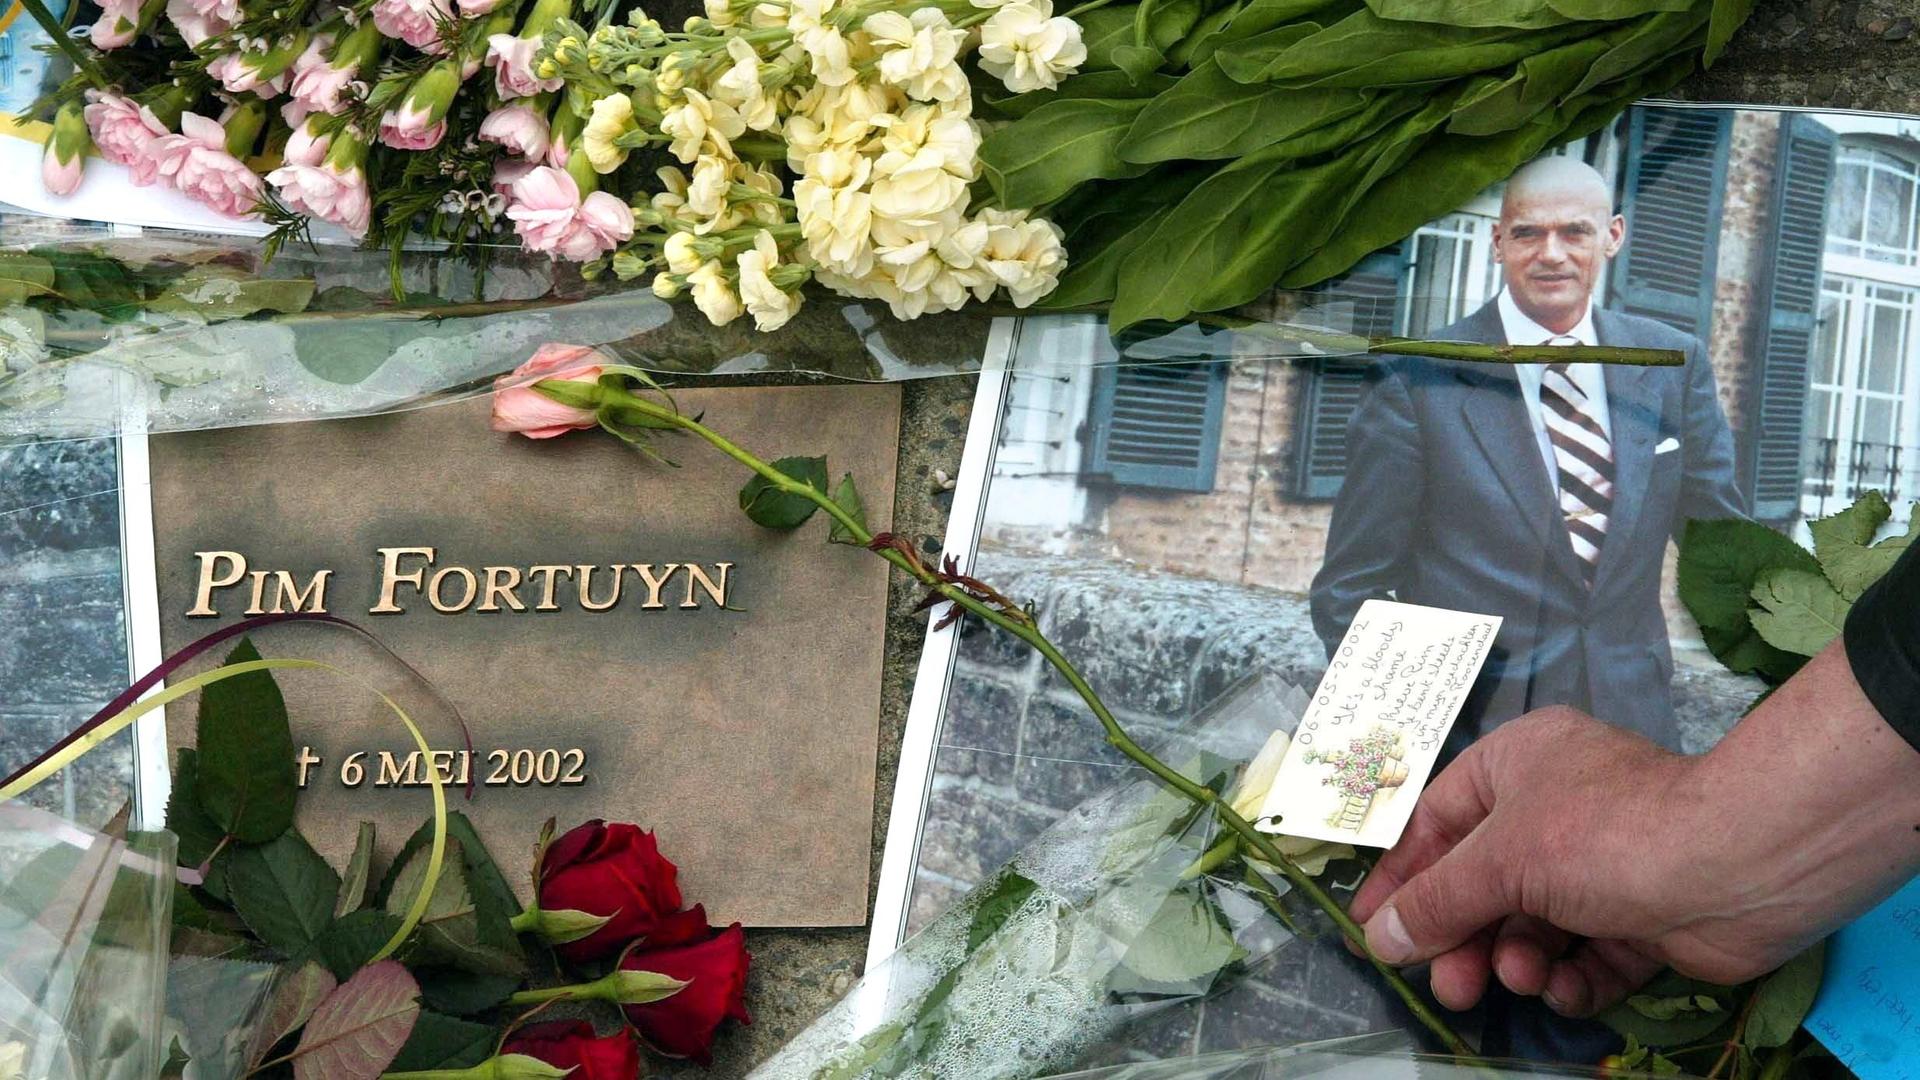 Ein Anhänger des ermordeten niederländischen Rechtspopulisten Pim Fortuyn legt am 6.5.2003 bei einer Gedenkfeier in Hilversum eine Blume nieder.